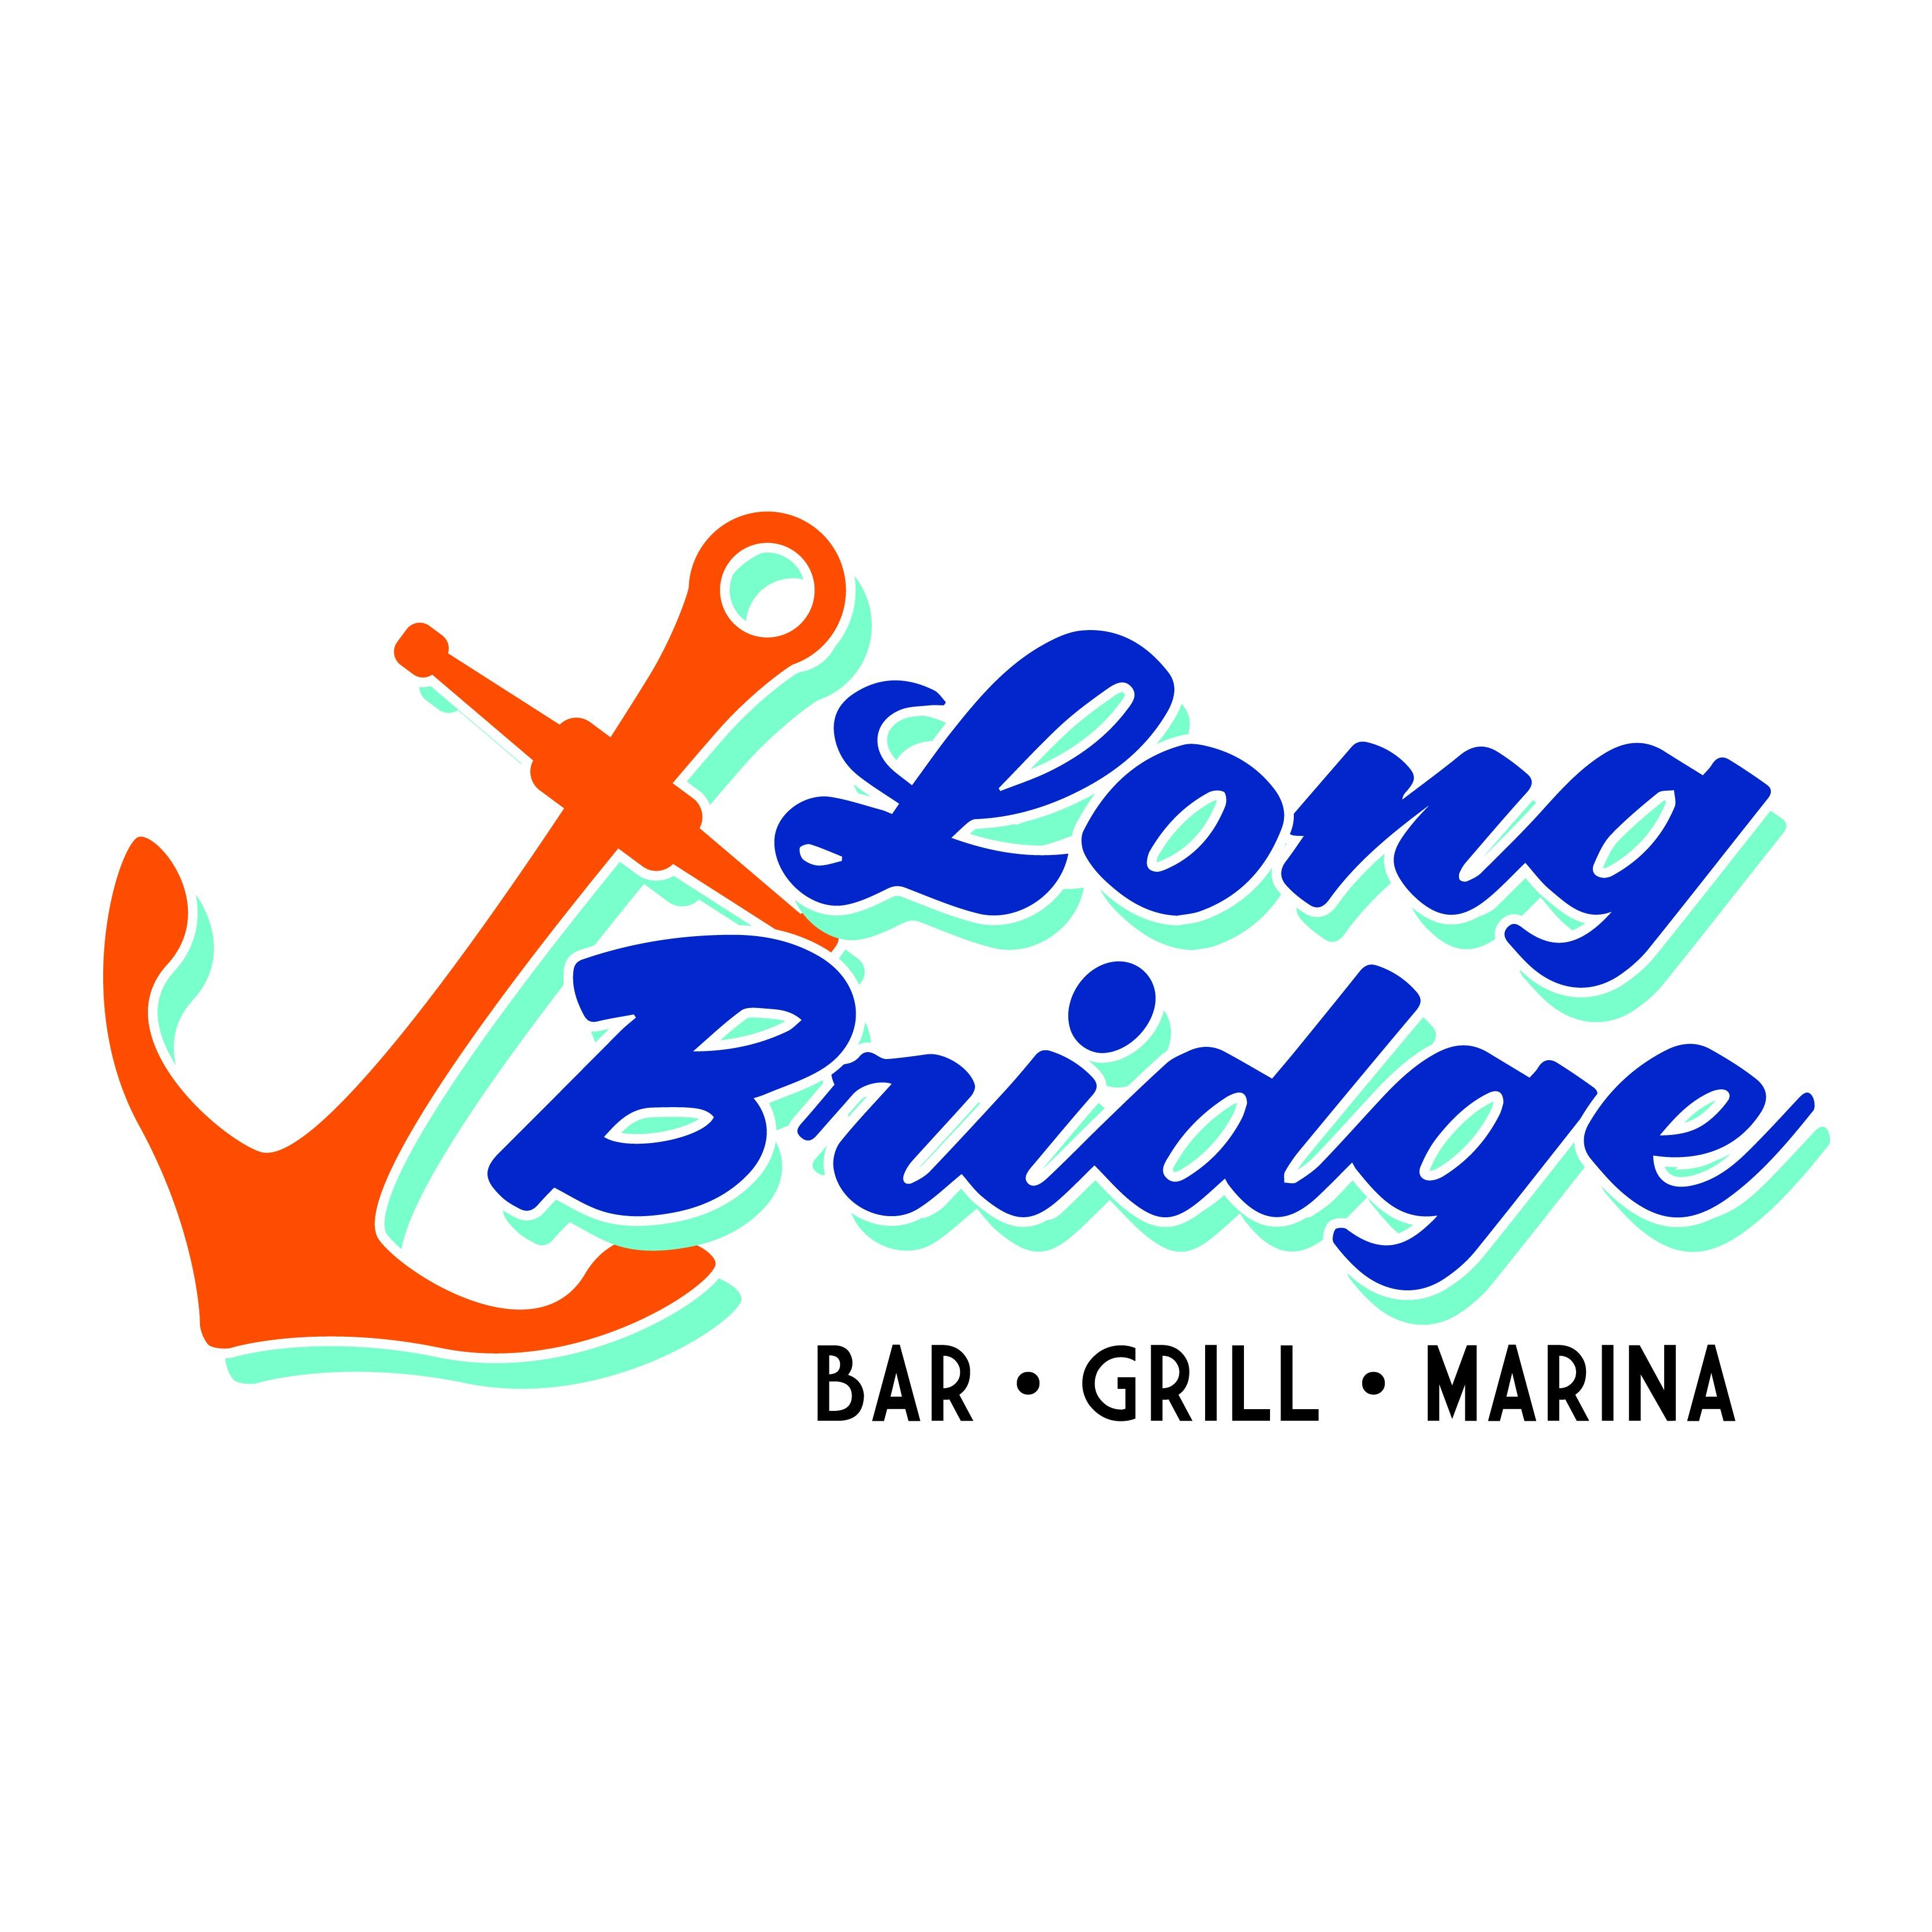 Long Bridge Bar, Grill & Marina